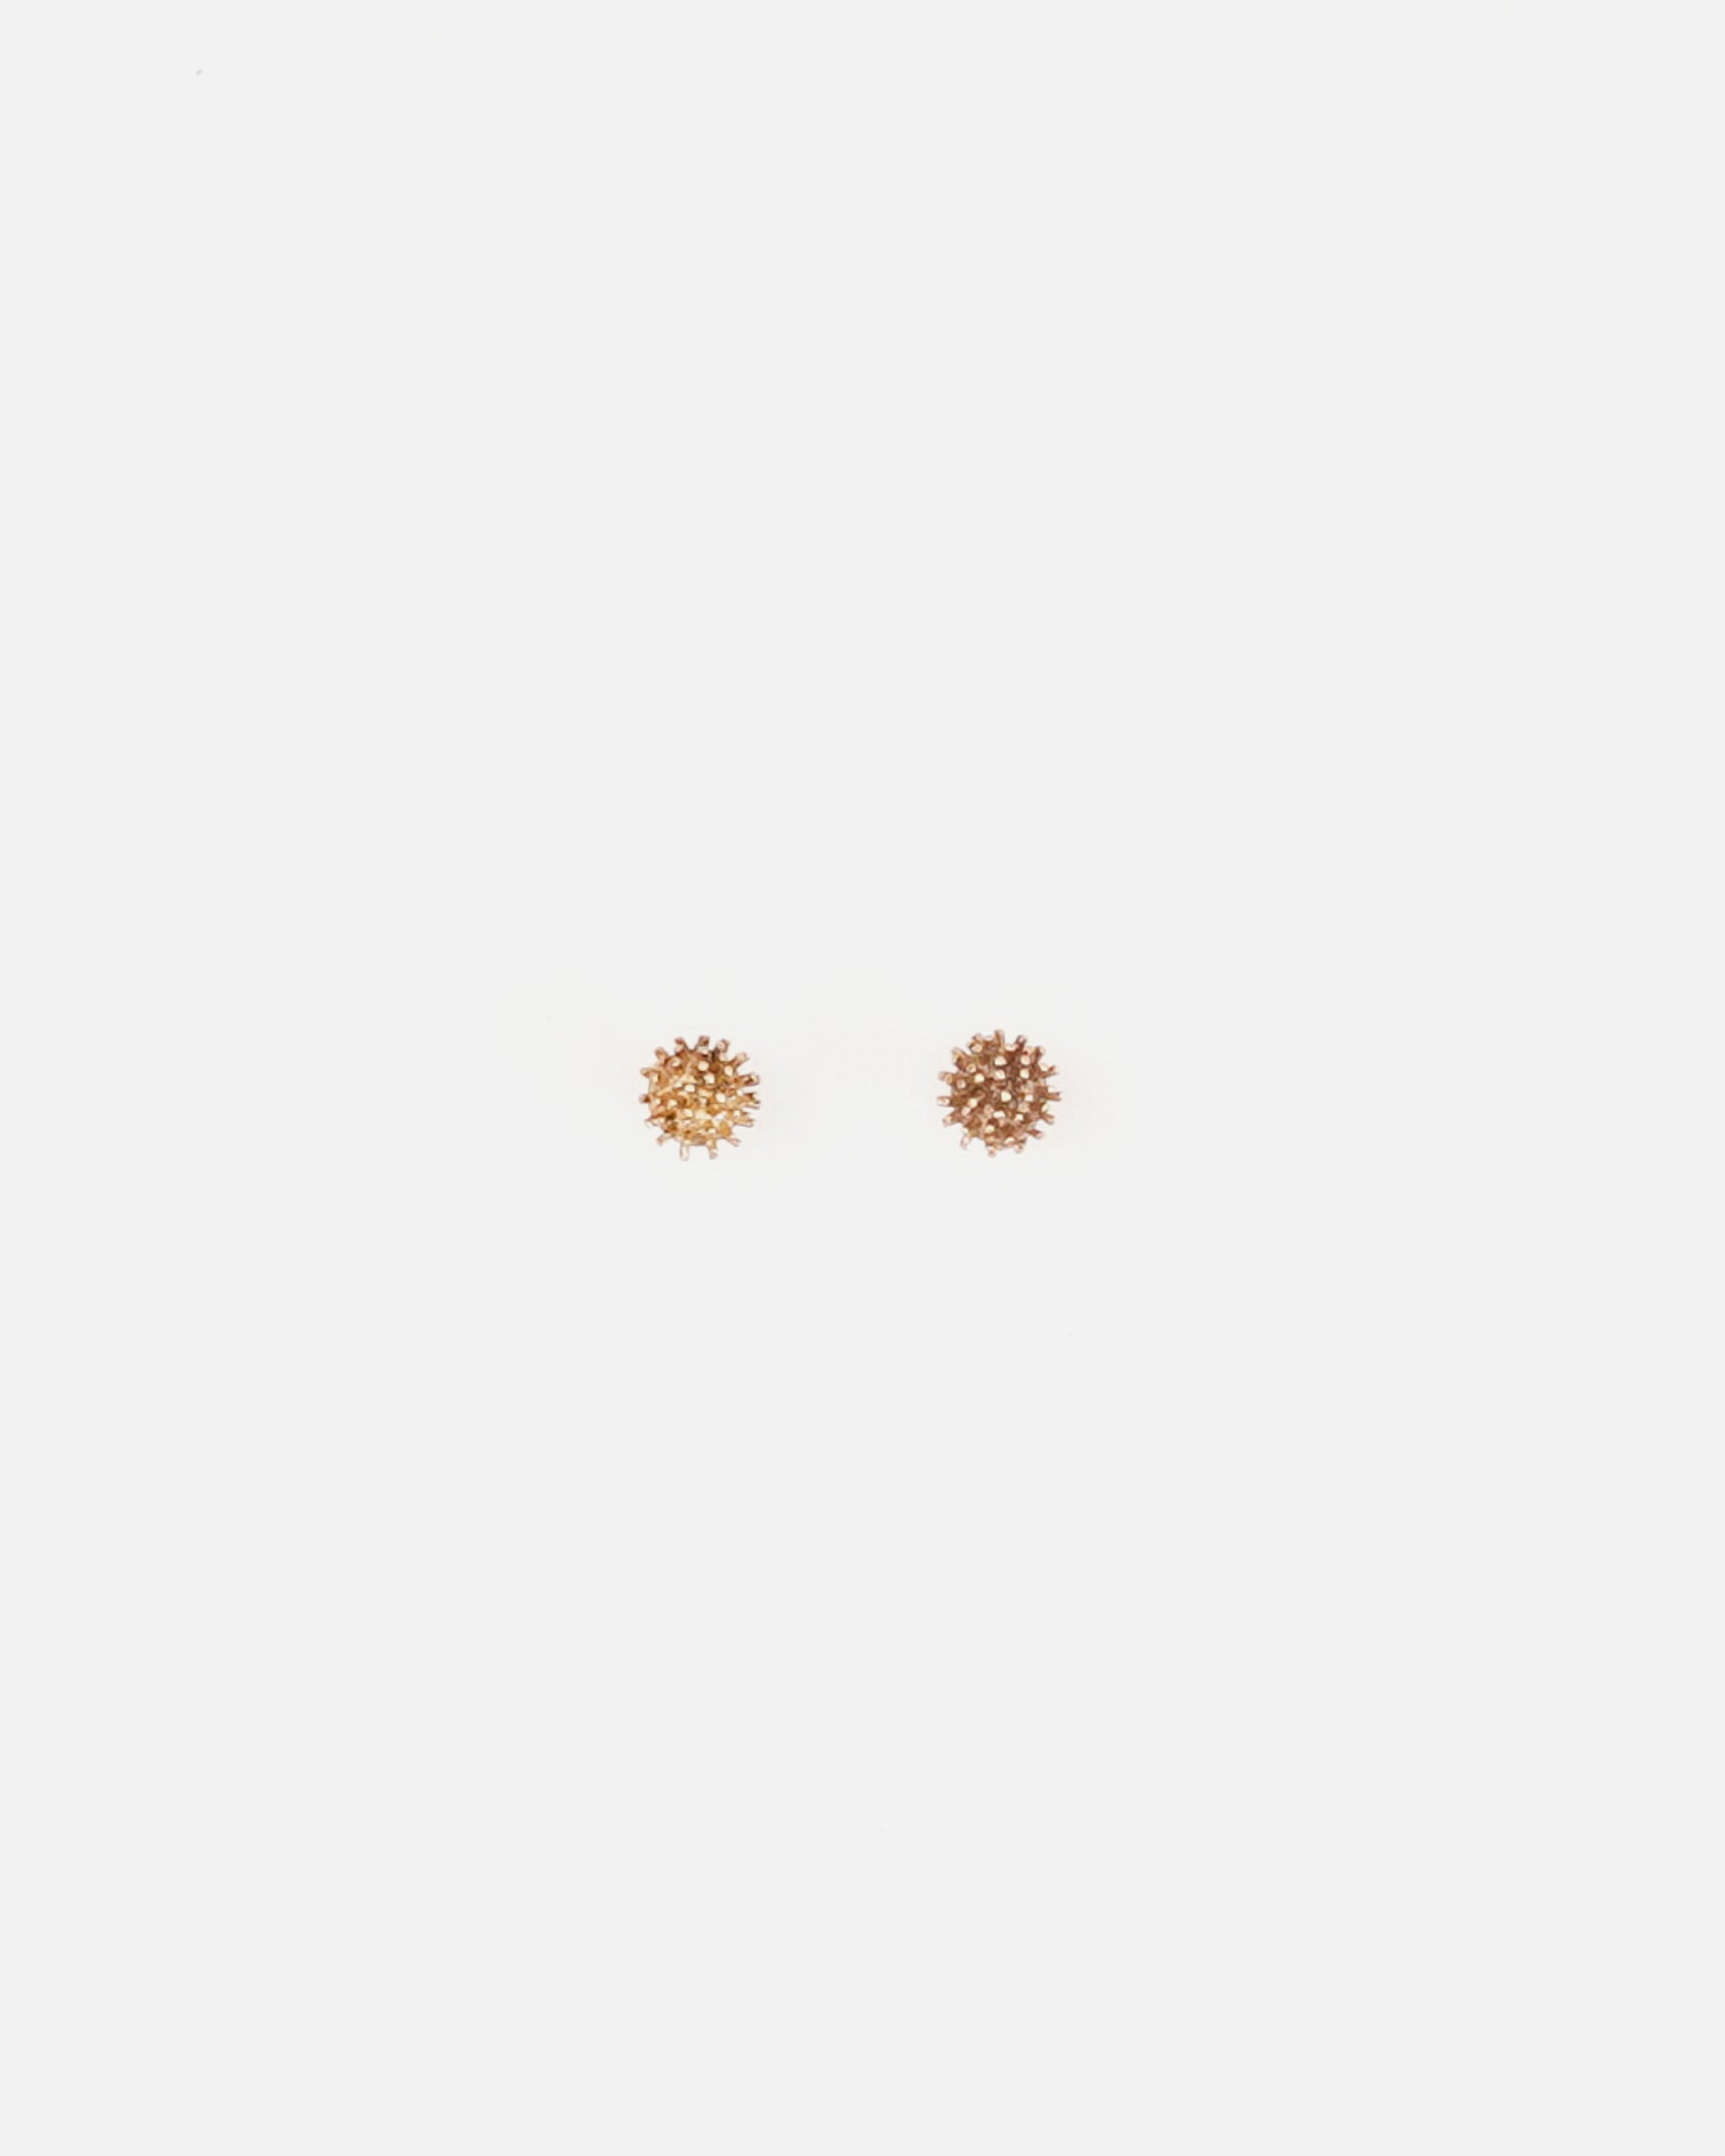 14k Gold Earrings